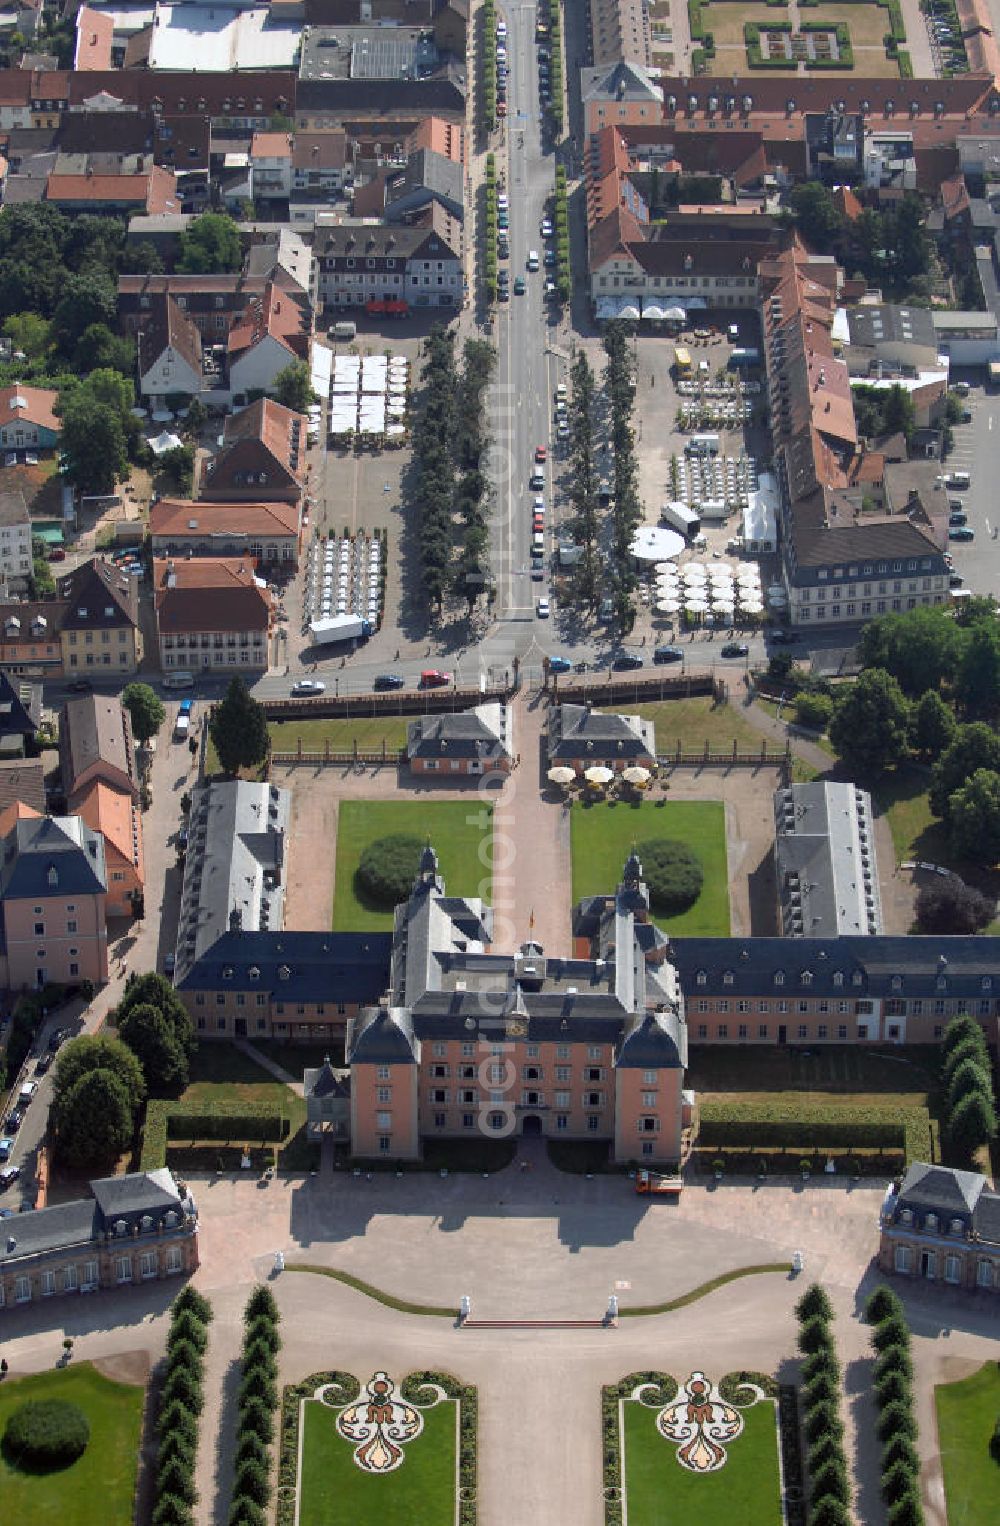 Schwetzingen from the bird's eye view: Blick auf den Schloss-Hauptbau, Küchenbau und den Ehrenhof mit Schlosswache vom Schloss Schwetzingen. Das Schloss war die Sommerresidenz der pfälzischen Kurfürsten Karl Philipp und Karl Theodor und liegt in der gleichnamigen Stadt. Seine heutige Form erhielt das Schloss auf Befehl des Kurfürsten Johann Wilhelm, der in Düsseldorf regierte. Das Bauwerk wurde in mehreren Bauabschnitten ab dem Jahre 1697 errichtet und ausgebaut und im Jahr 1752 erfolgte eine Gartenerweiterung. 2007 wurde der Antrag auf Aufnahme der ehemaligen kurpfälzischen Sommerresidenz Schwetzingen in die UNESCO-Welterbe-Liste gestellt. Jährlich finden im Schloss die Schwetzinger Festspiele und alle zwei Jahre das Lichterfest statt. Kontakt: Schloss Schwetzingen, 68723 Schwetzingen, Tel. +49(0)6202 81-484, Fax +49(0)6202 81-386, E-Mail: info@schloss-schwetzingen.de